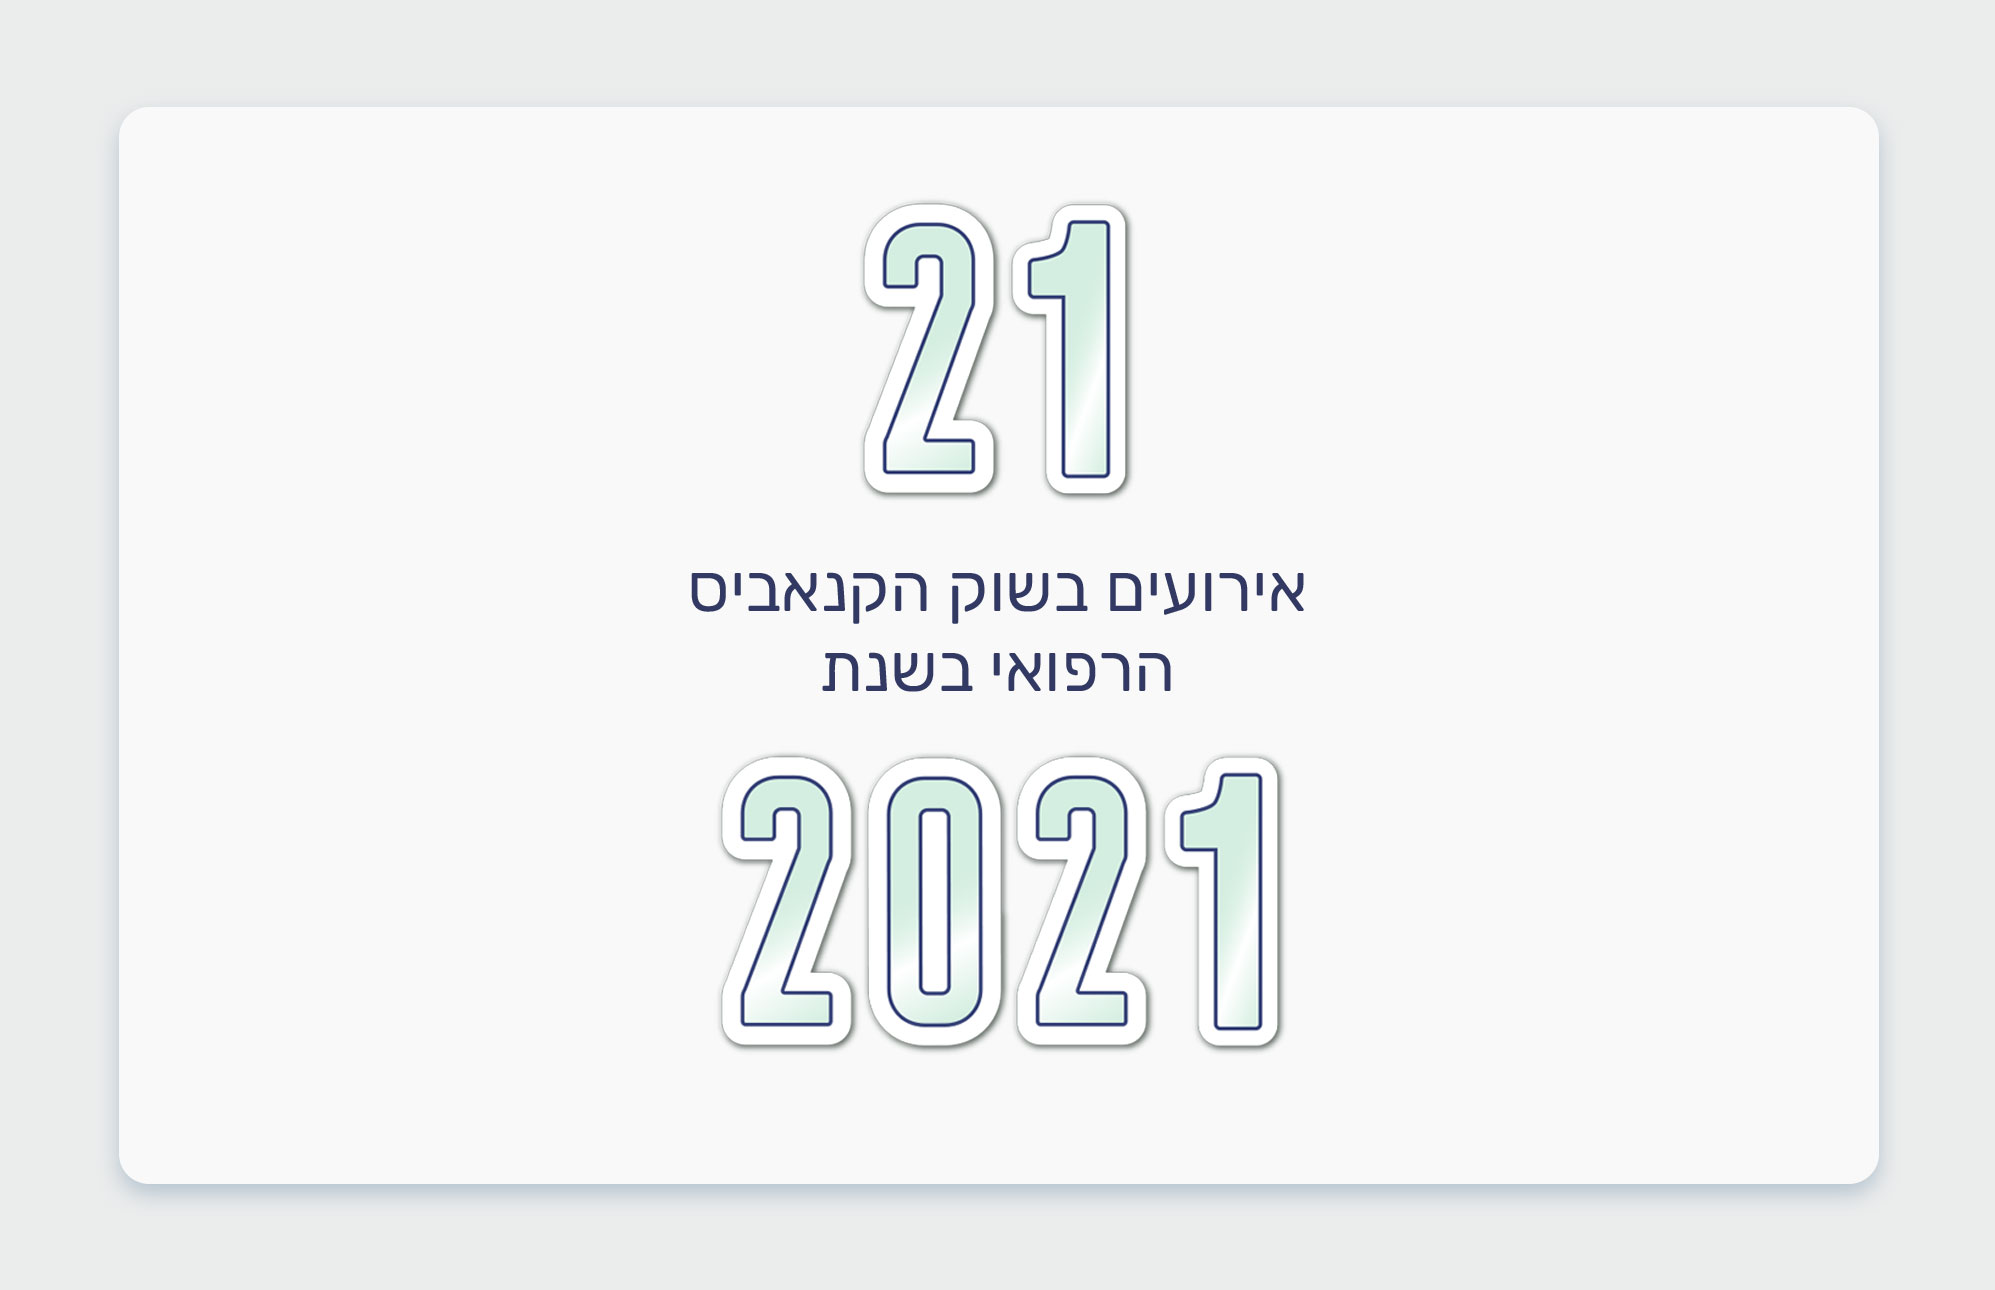 21 אירועים משנת 2021 החולפת בשוק הקנאביס הרפואי בישראל